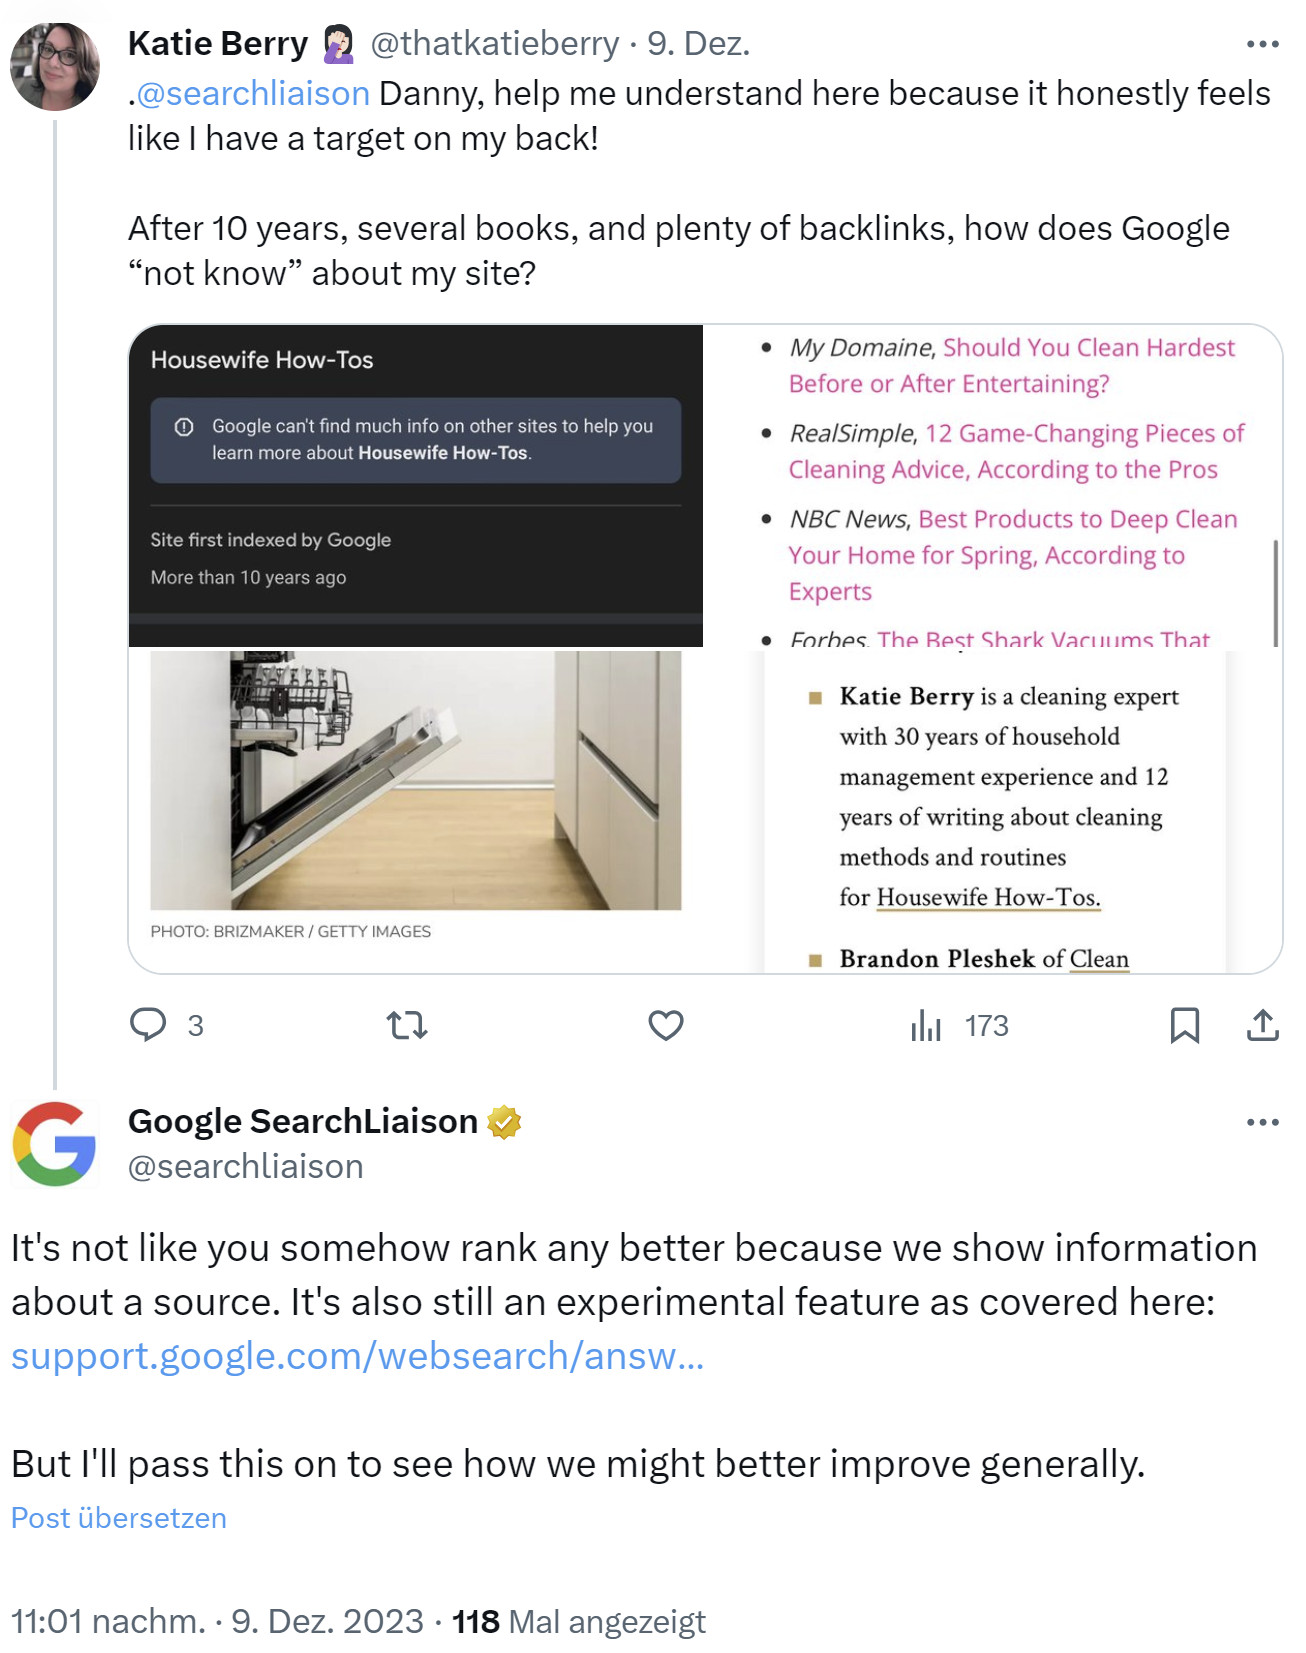 Google: Anzeige von 'About the source' bringt keine besseren Rankings